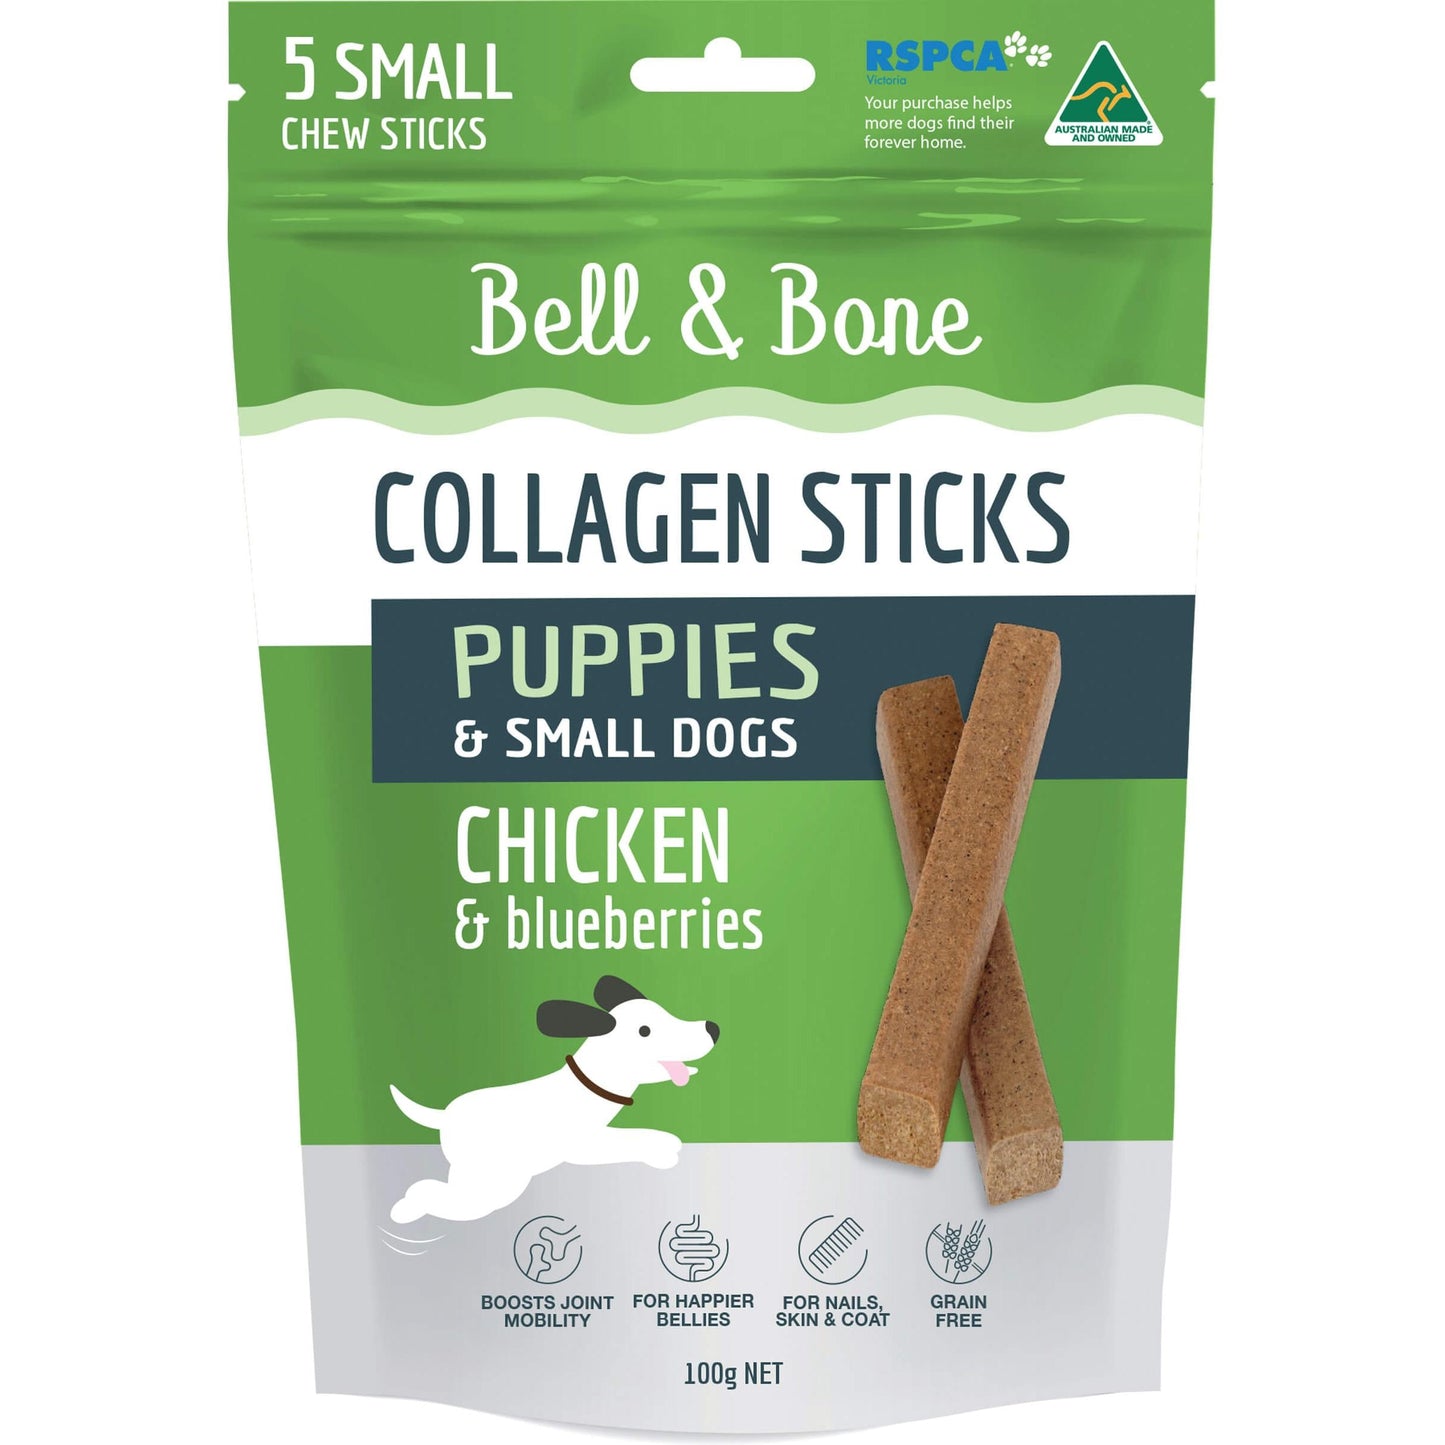 Bell & Bone Chicken Collagen Sticks Puppy & Small Dog Treats 100g